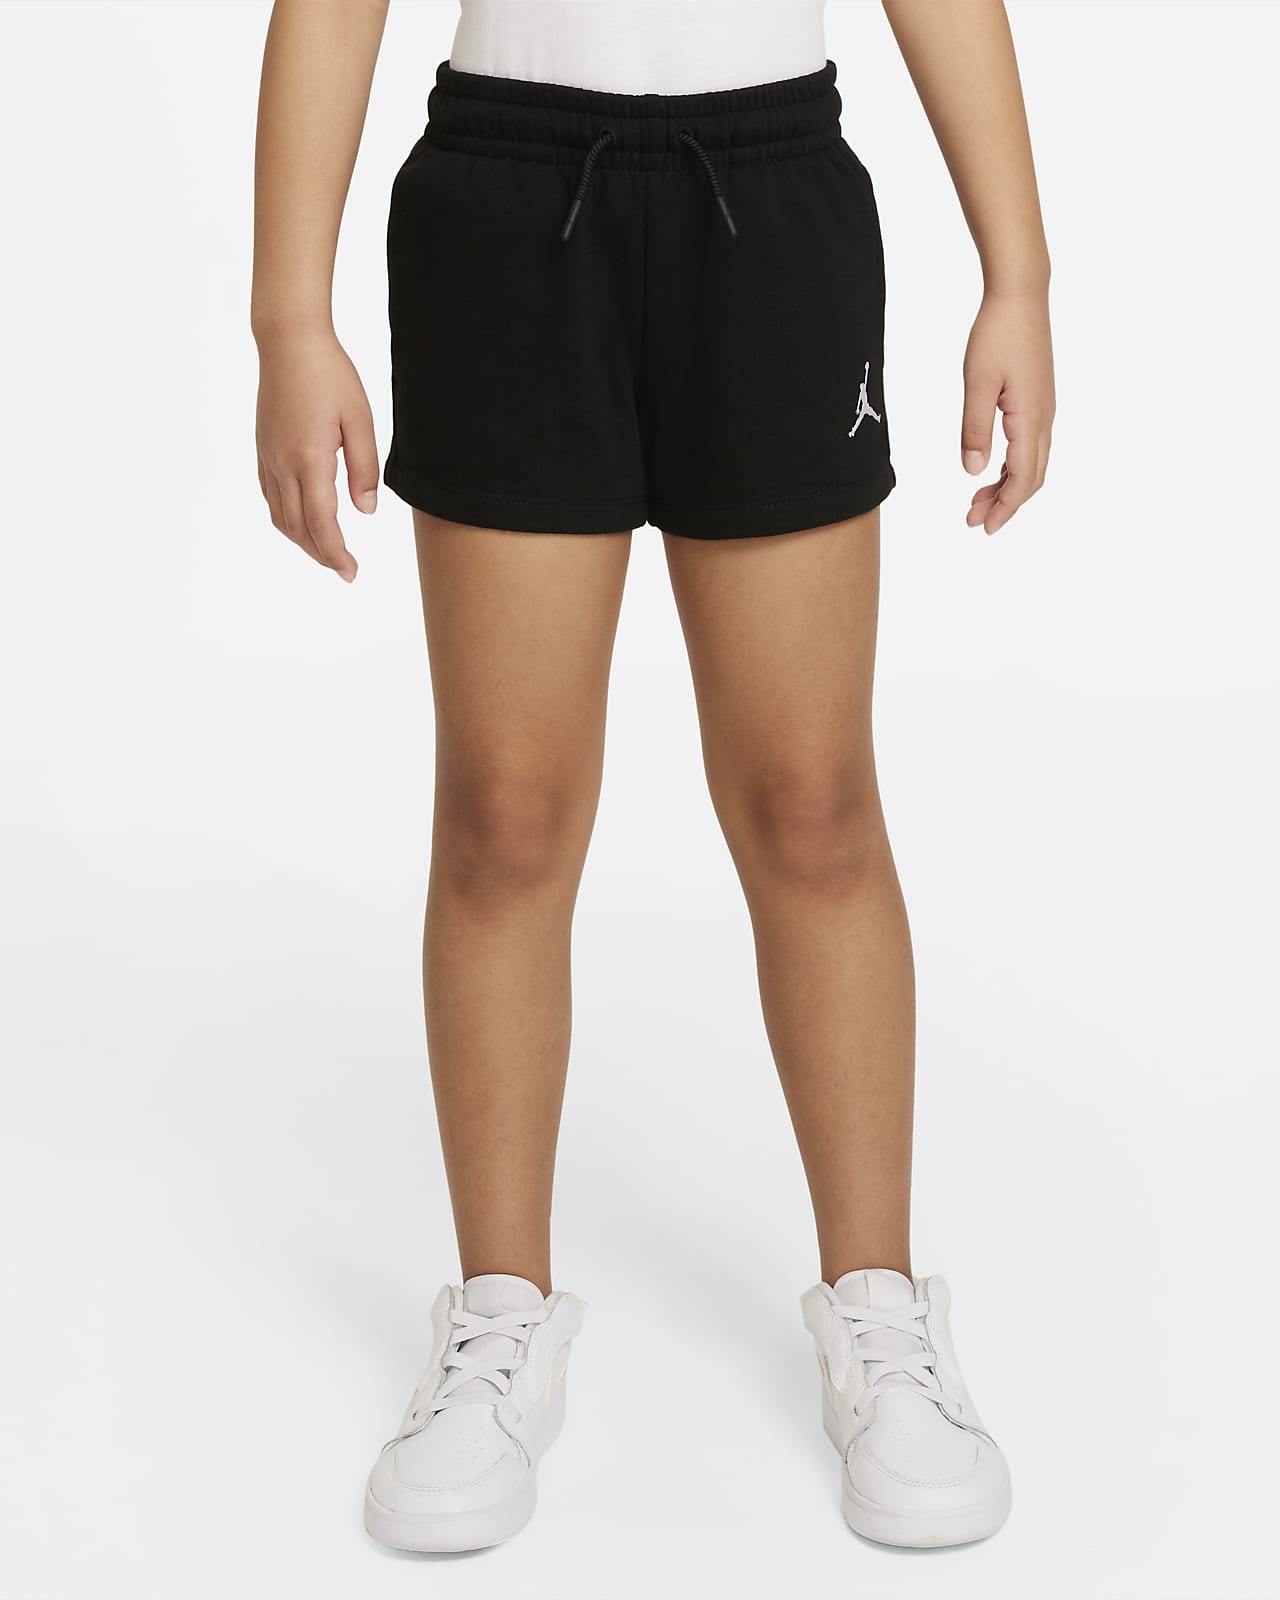 Jordan Little Kids' Shorts. Nike.com